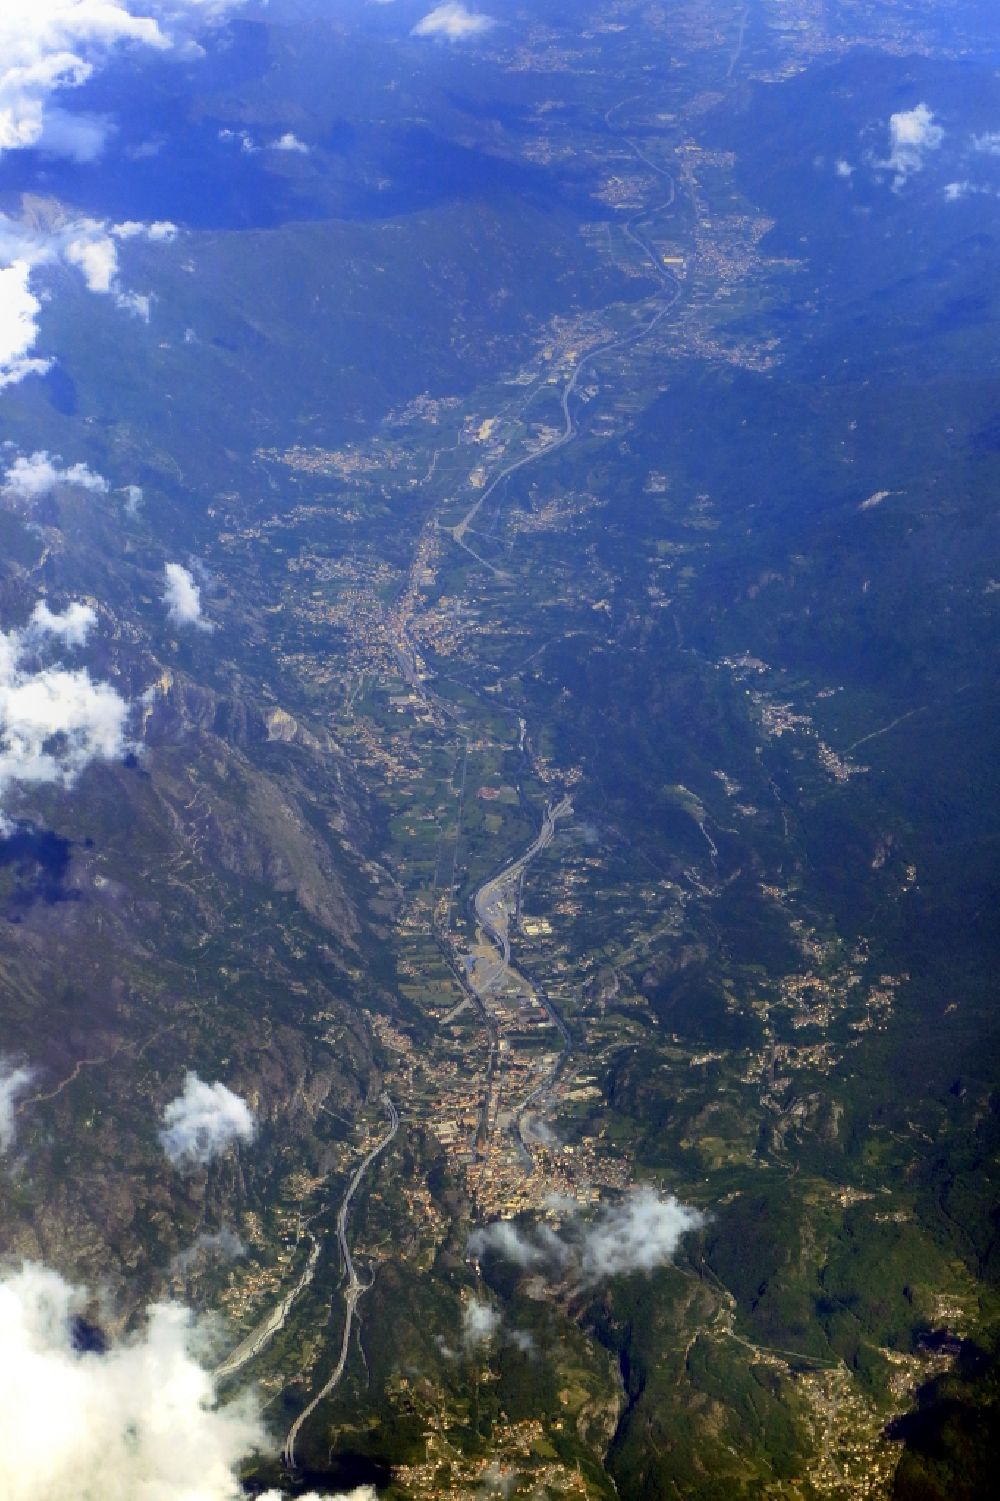 Luftbild Susa - Ortsansicht im Talbereich der Dora Riparia in Susa in Piemont, Italien